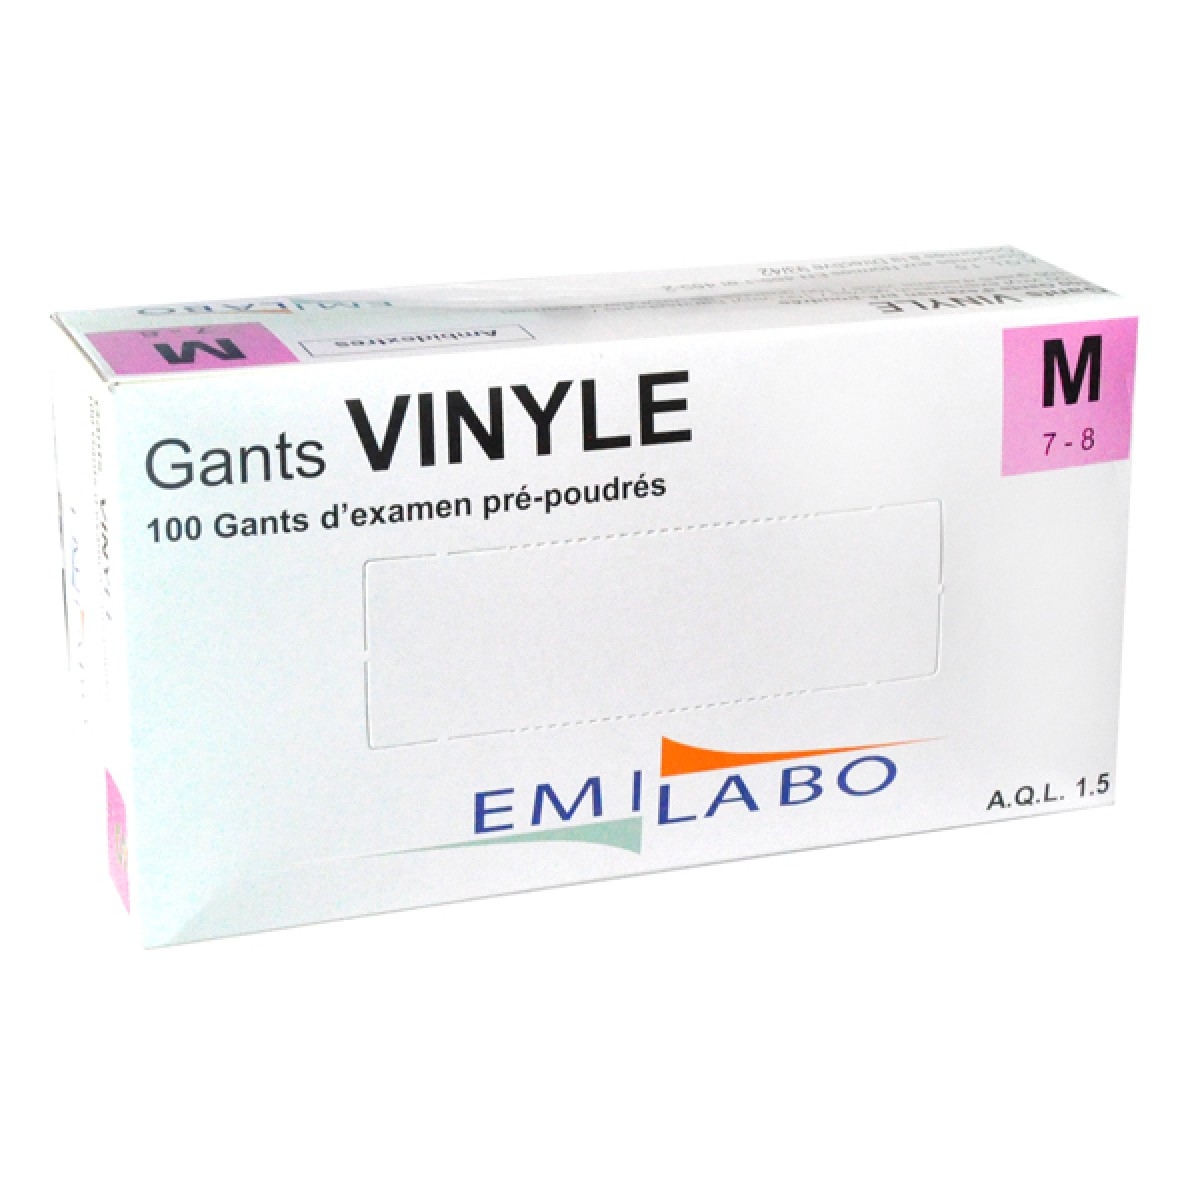 Gants Vinyle non poudrés Sensinyl Light Free - Taille M 7/8 - Boîte de 100